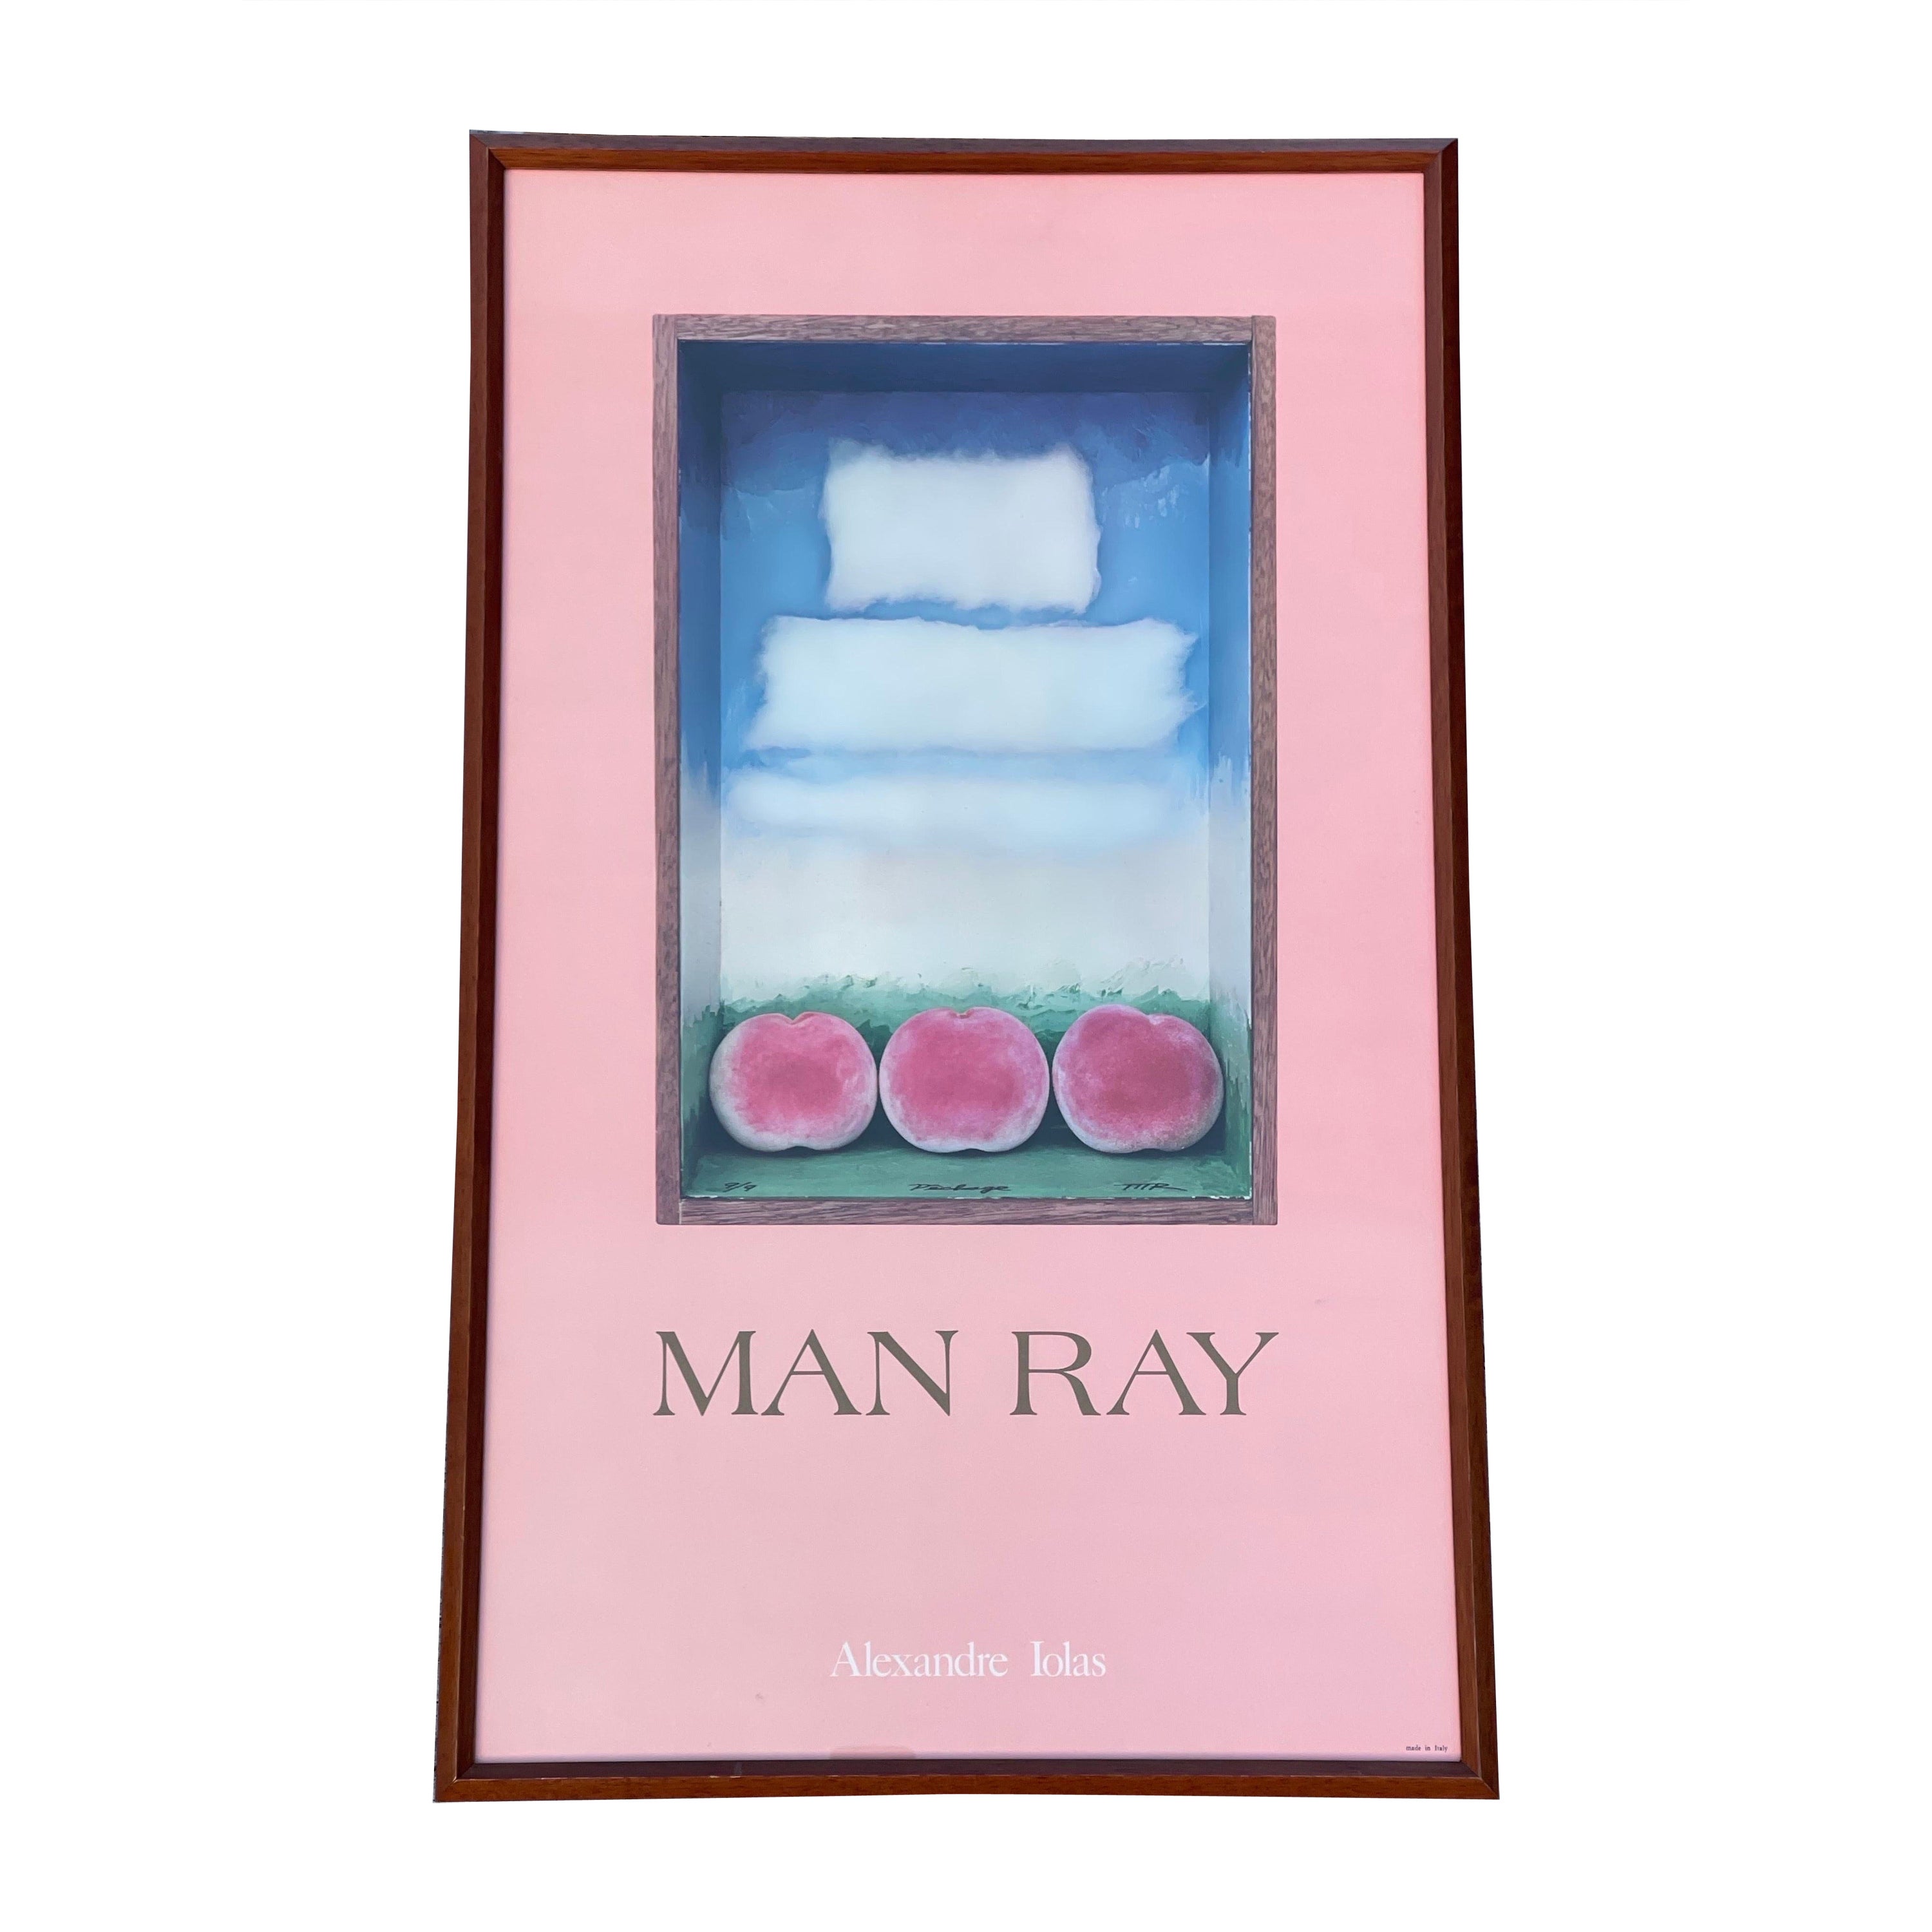 Affiche de l'exposition Man Ray à la galerie Alexandre Iolas, encadrée